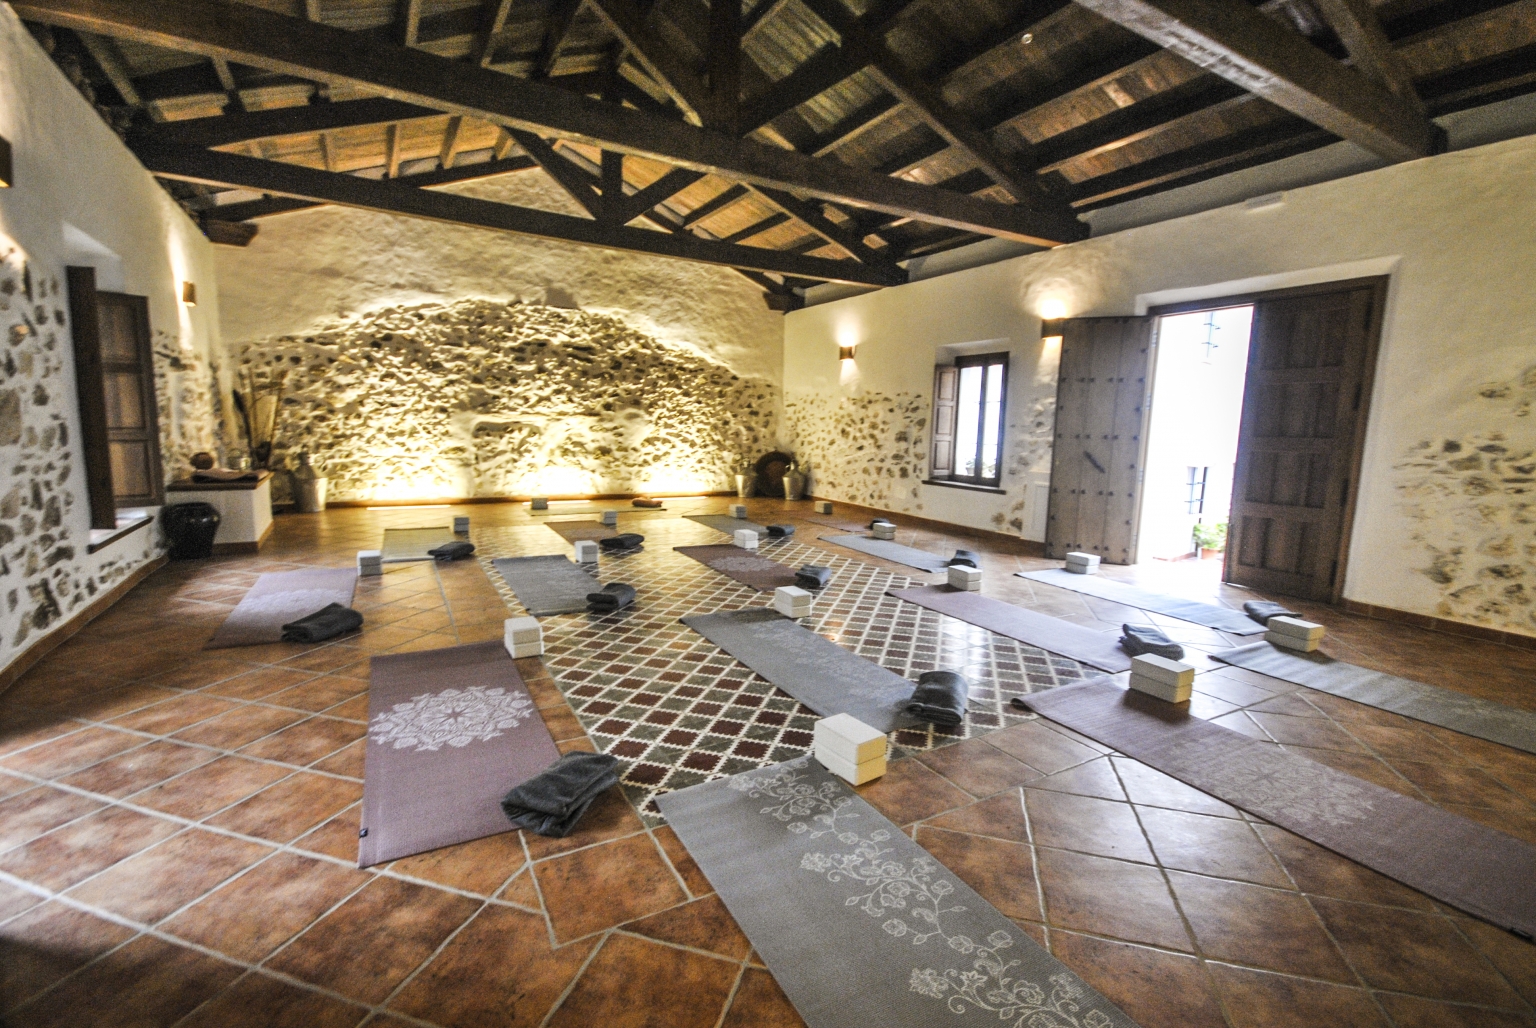 Sala de Yoga para tus cursos, retiros, formaciones. Opción de montar suelo tatami. Material de yoga (esterillas, tacos, mantas). Puedes ver el resto de instalaciones en Cortijo Las Monjas, Alta Axarquía. Málaga. Andalucia